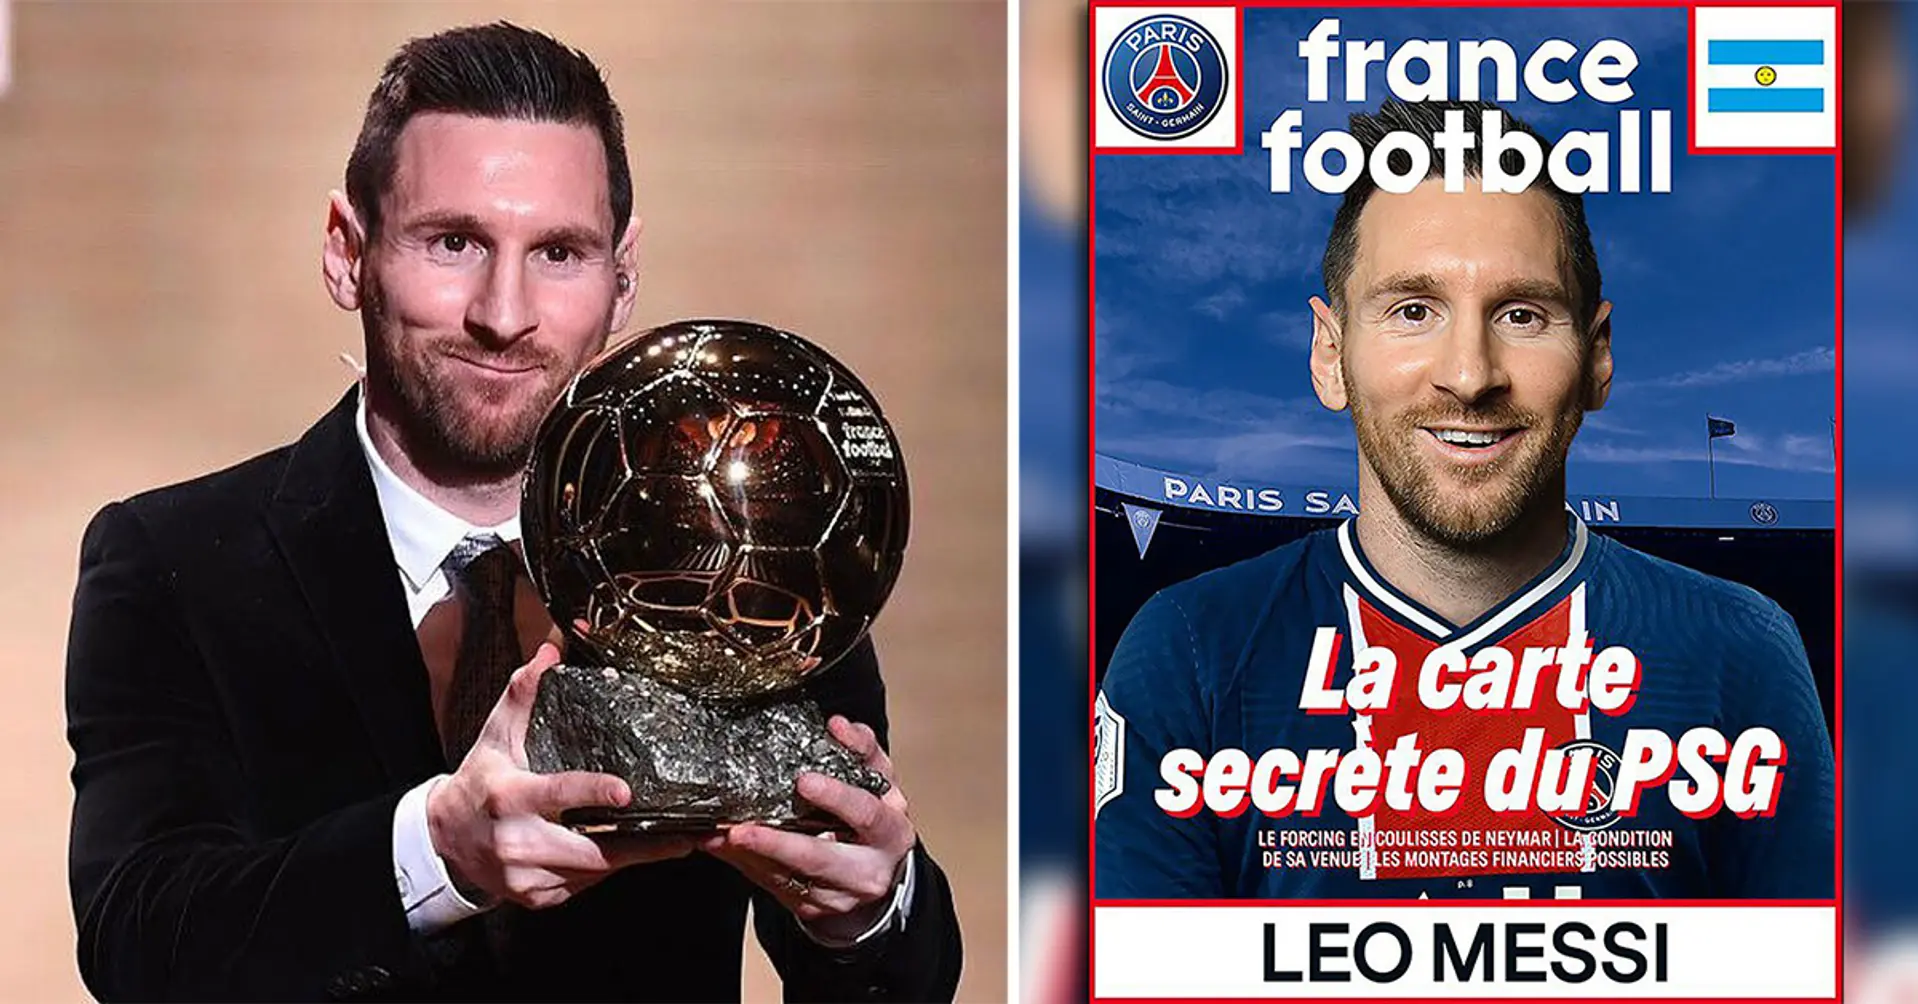 France Football fait une déclaration officielle après les rumeurs selon lesquelles Leo Messi aurait remporté le Ballon d'Or